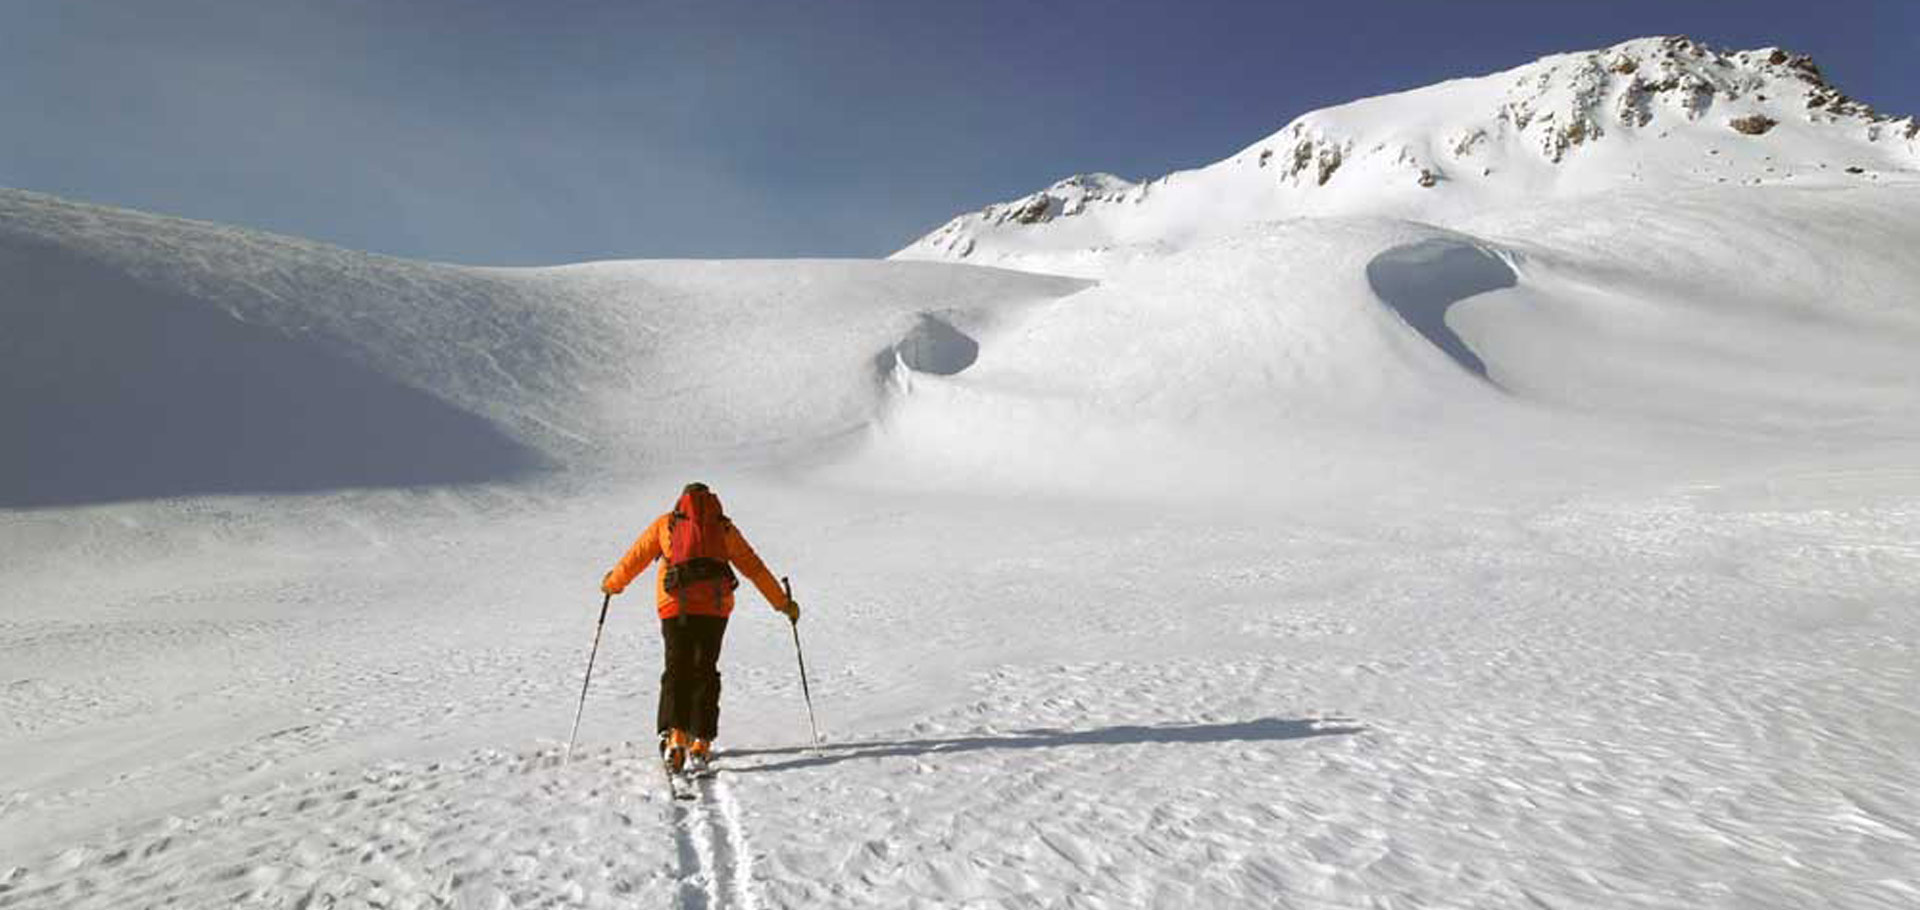 Fare la traccia: gestione avanzata del rischio nello sci alpinismo